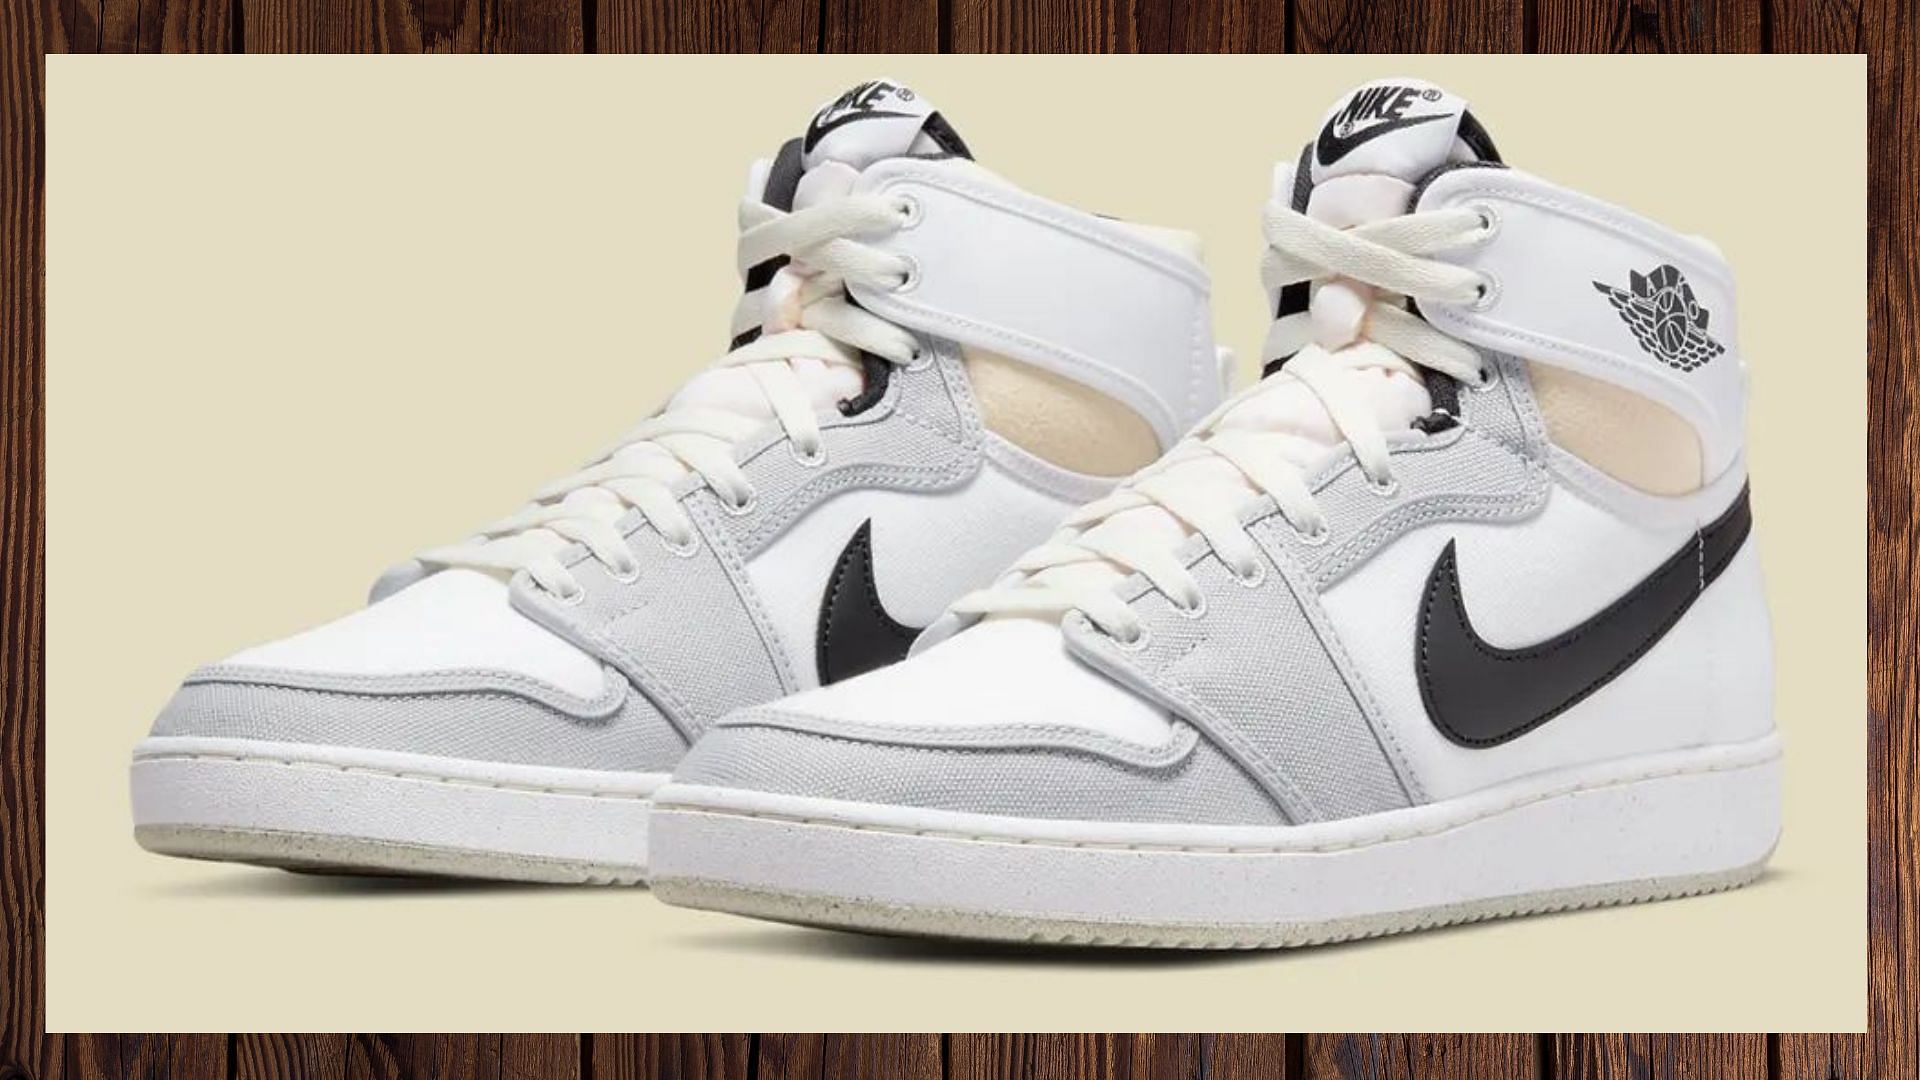 Air Jordan 1 KO Grayscale high-top sneakers (Image via Nike)